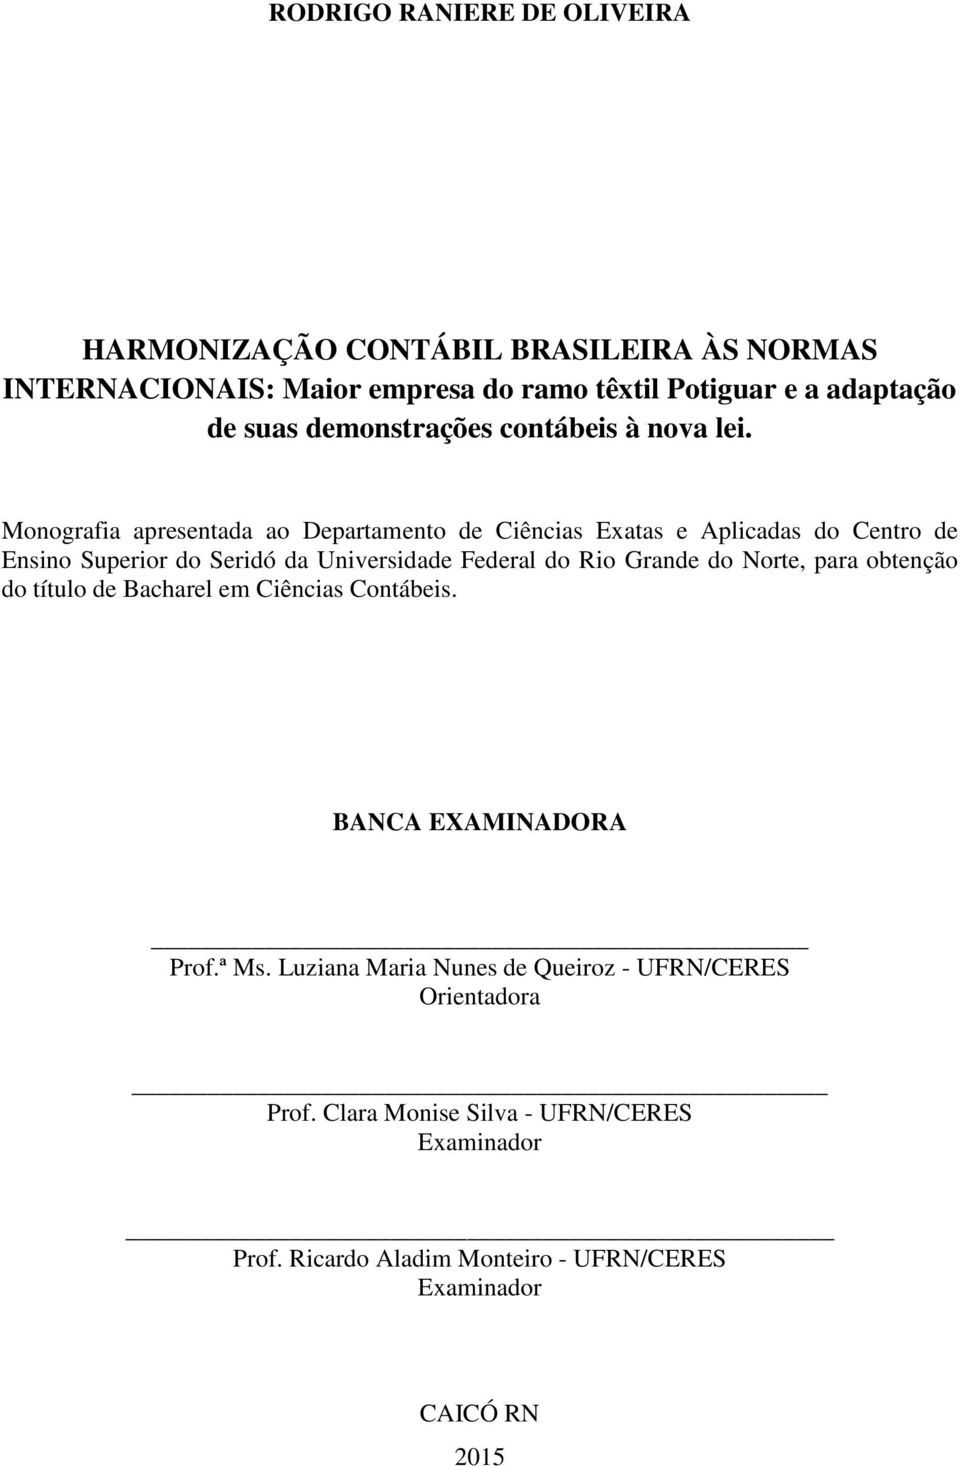 Monografia apresentada ao Departamento de Ciências Exatas e Aplicadas do Centro de Ensino Superior do Seridó da Universidade Federal do Rio Grande do